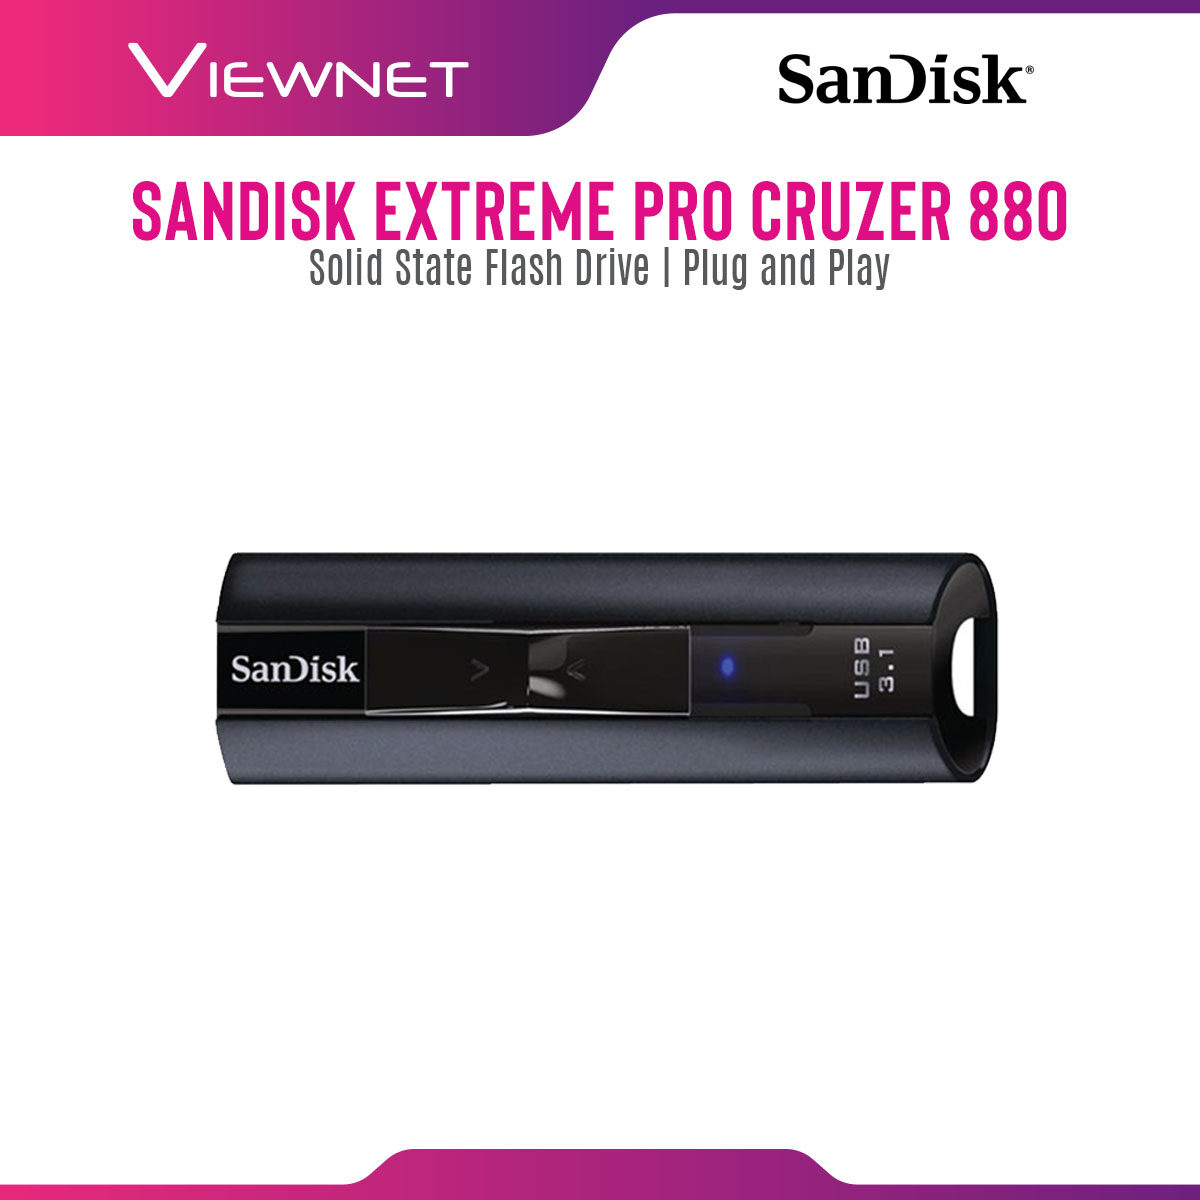 Sandisk USB 3.1 Cruzer 880 cz880 Extreme Pro 128GB/256GB Flash Drive (SDCZ880-128G-G46/SDCZ880-256G-G46)